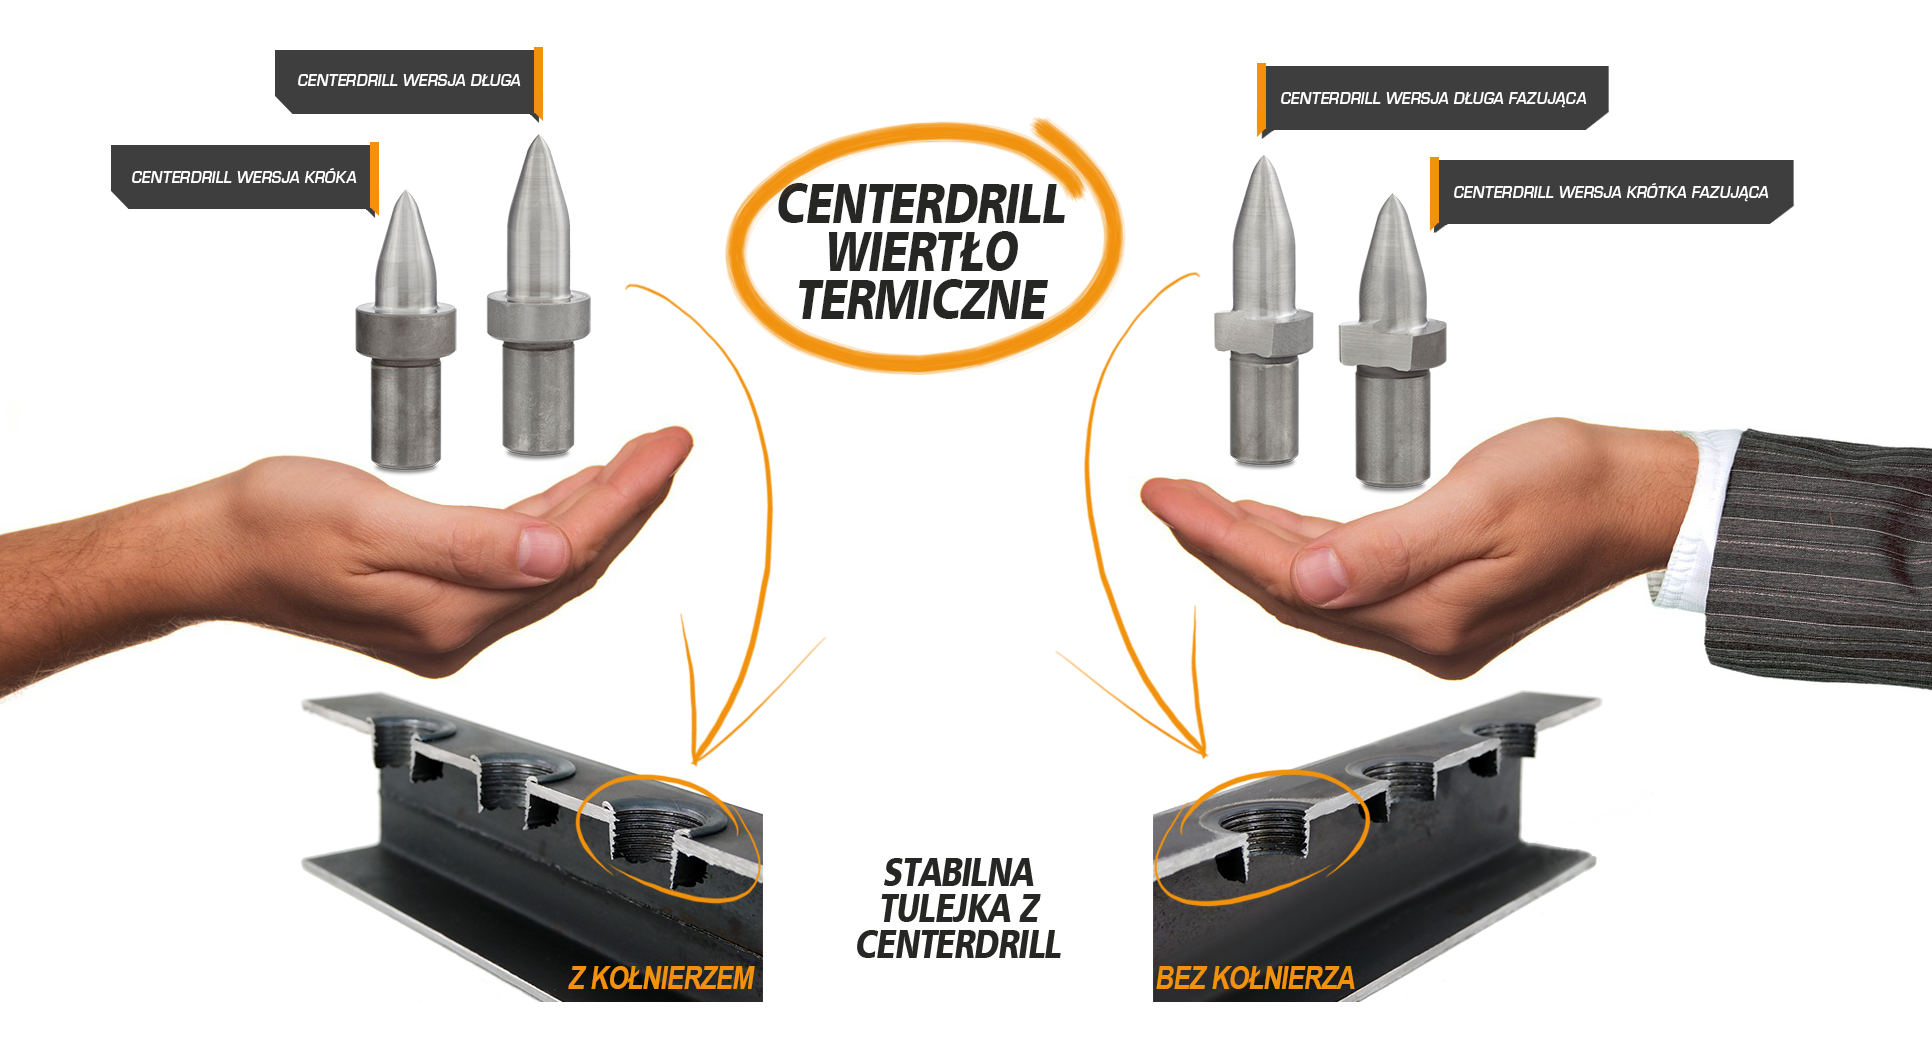 Centerdrill, Technologia wiercenia termicznego, wiertło termiczne, wiercenie termiczne, termicznego wiercenia